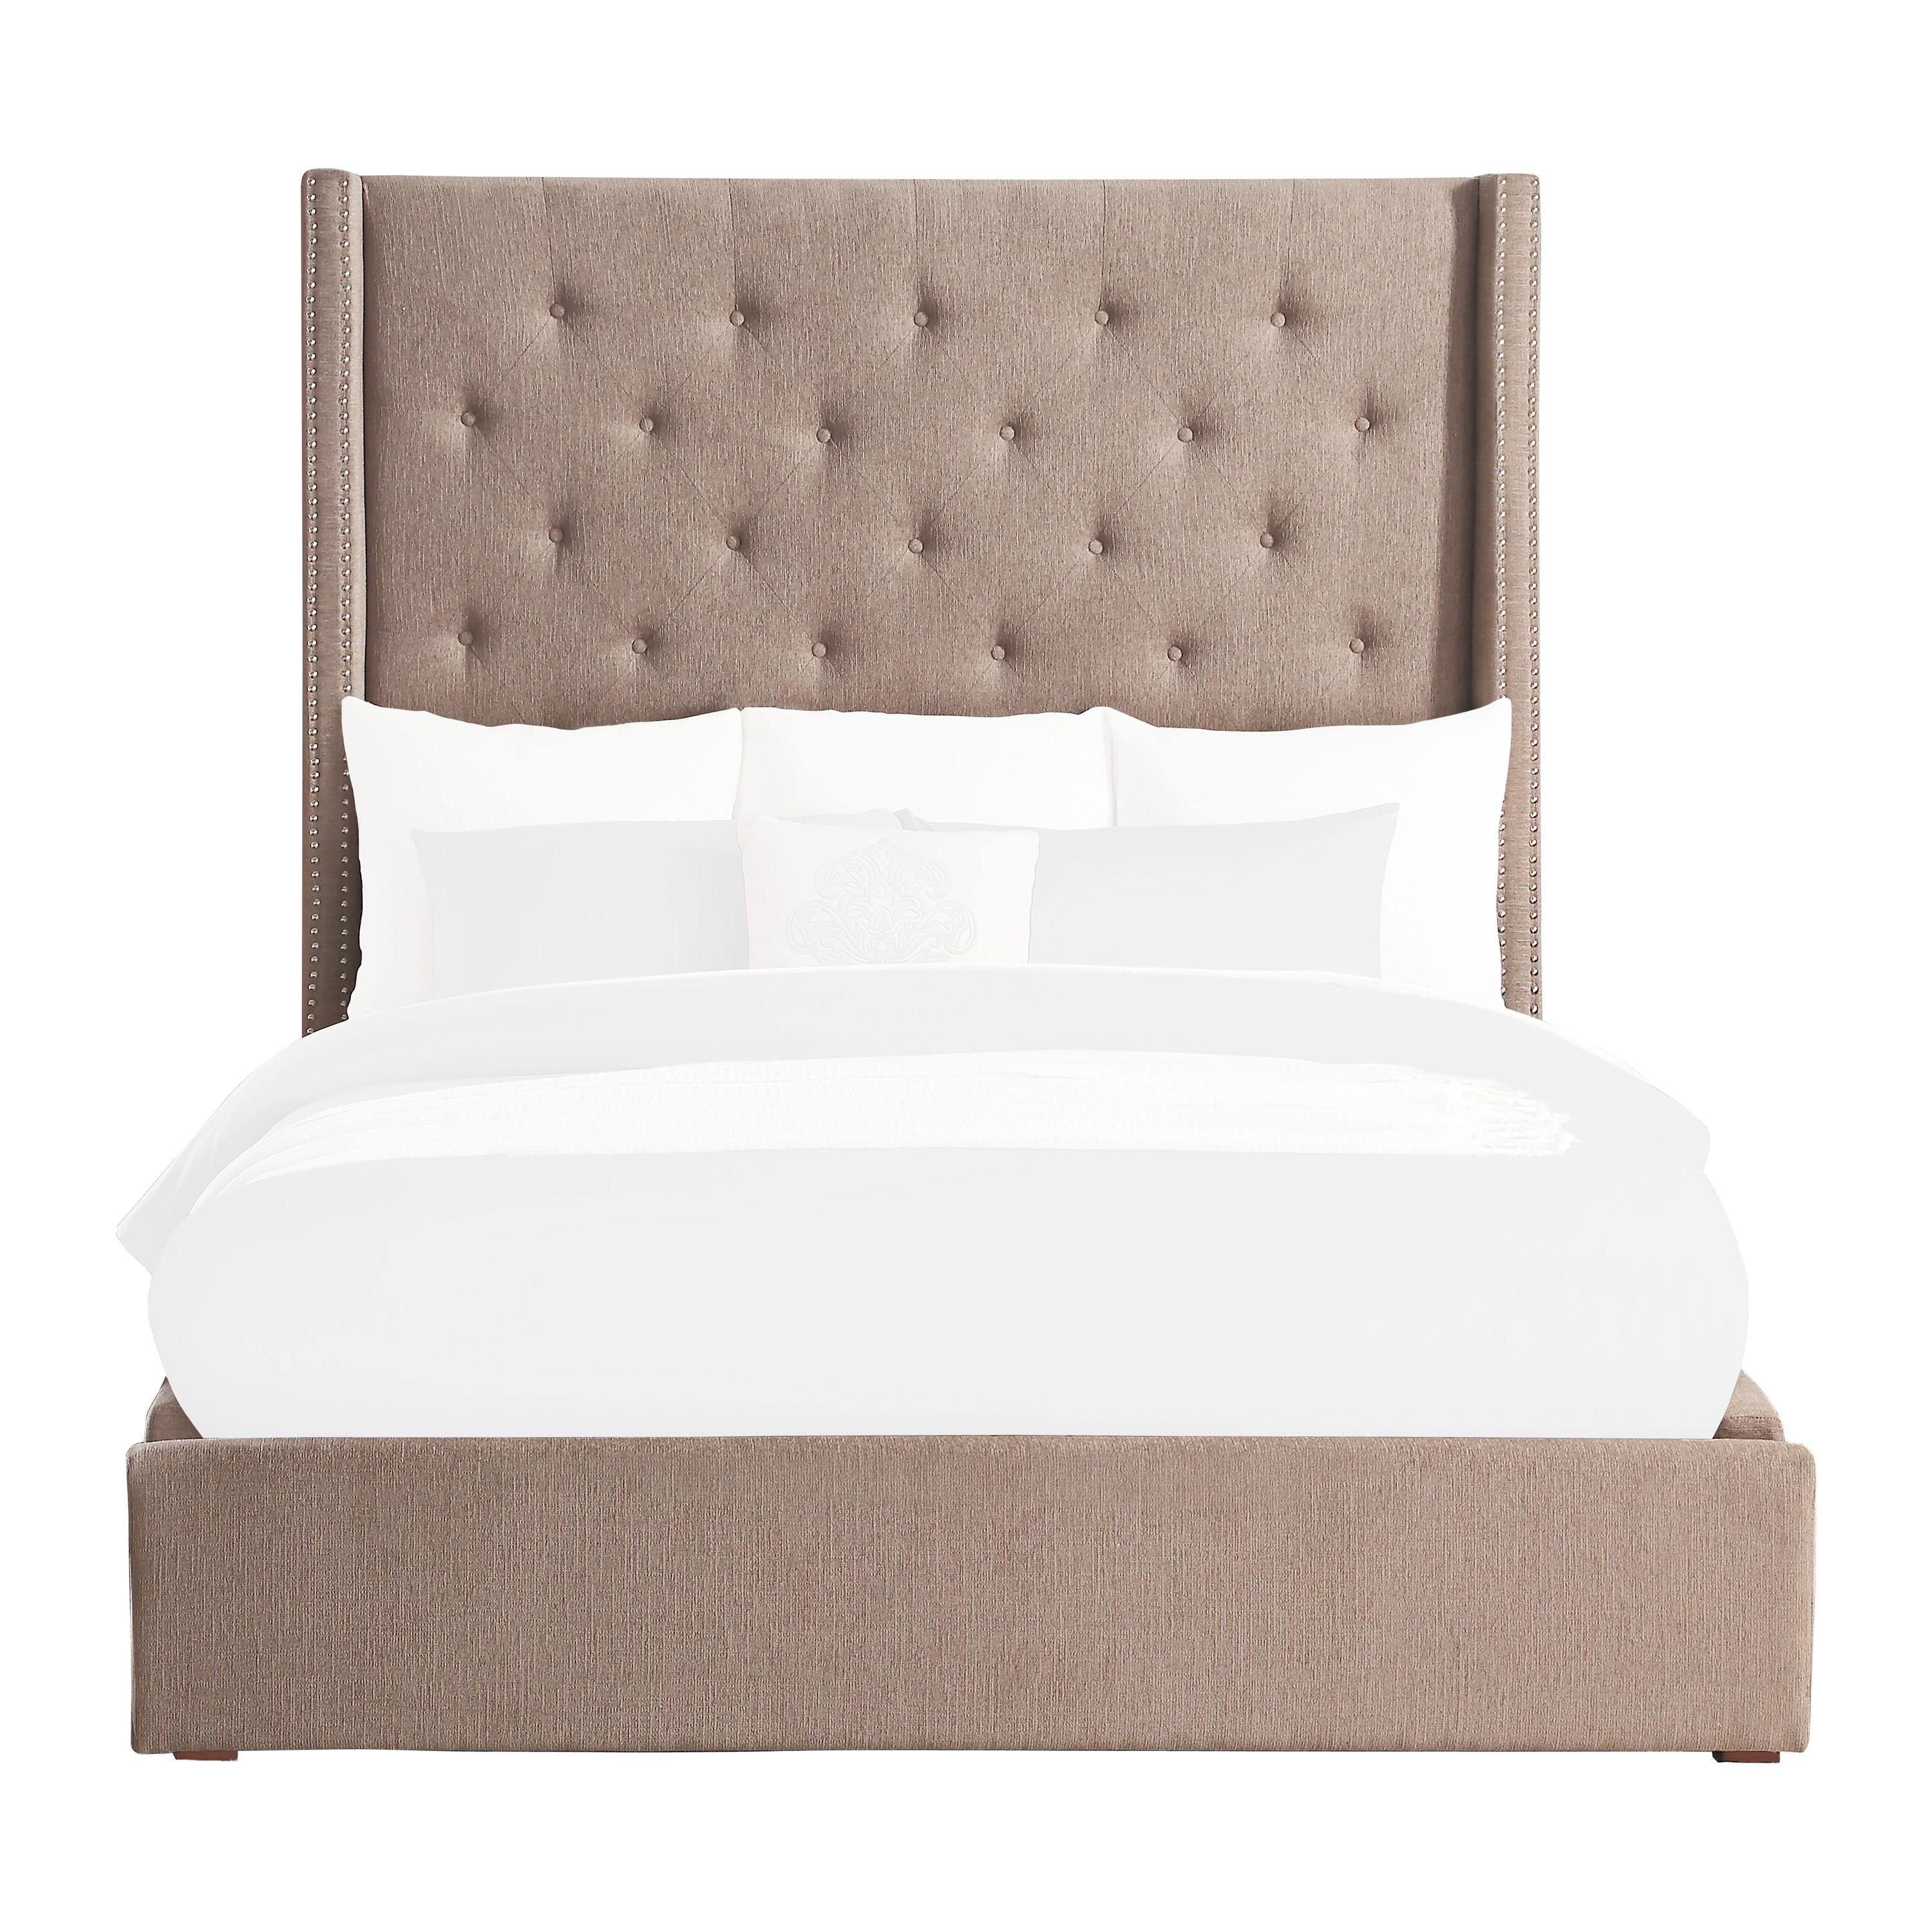 

    
Modern Brown Solid Wood CAL Bed Homelegance 5877KBR-1CK* Fairborn
